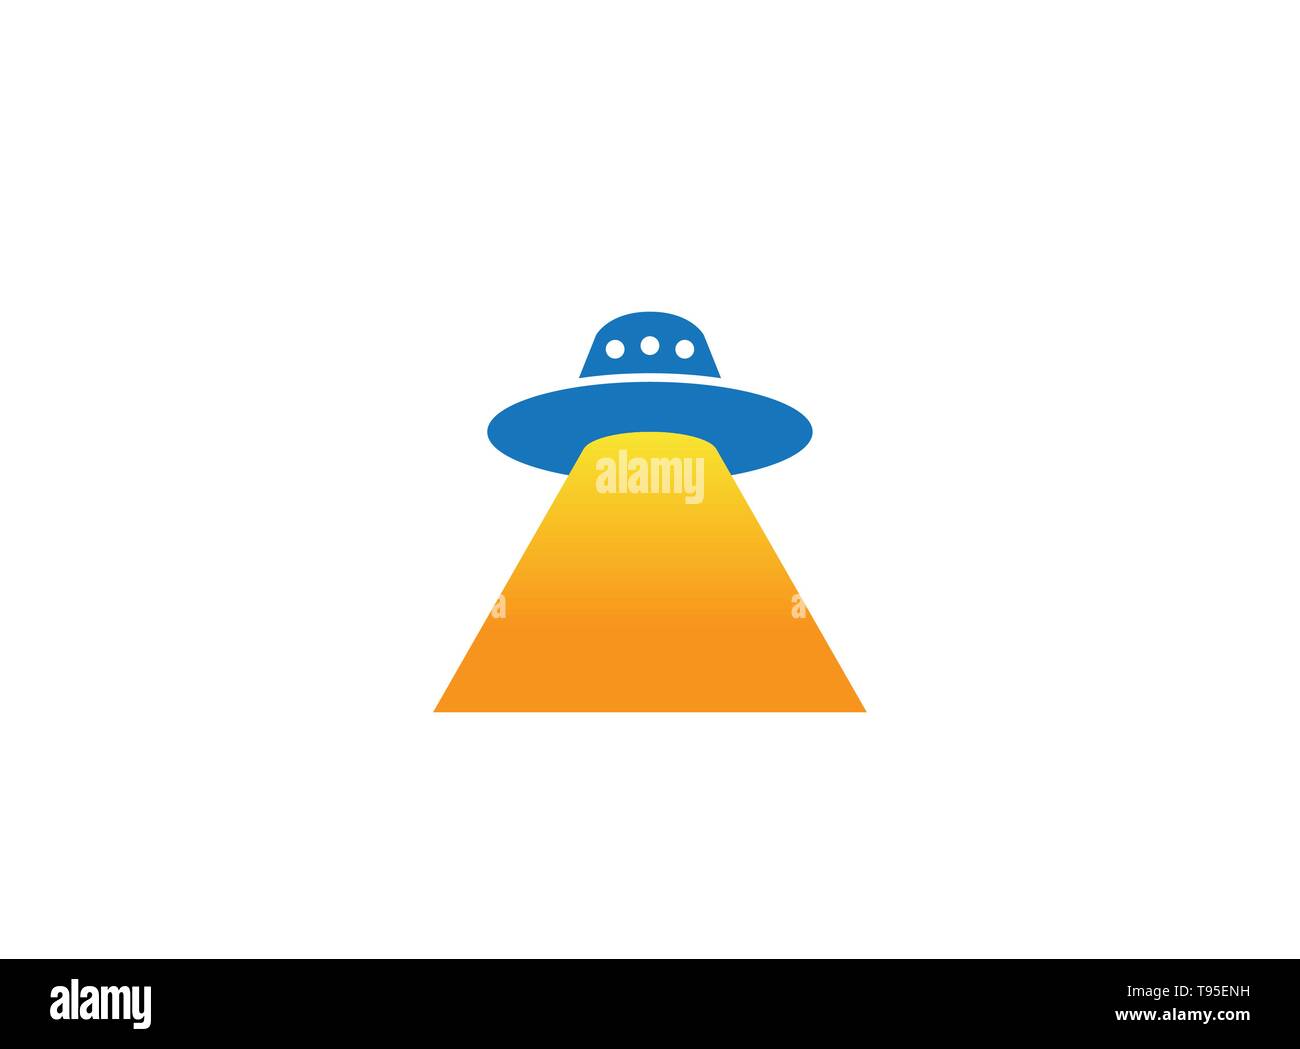 Alien ship fly with light for logo design illustration Stock Vector